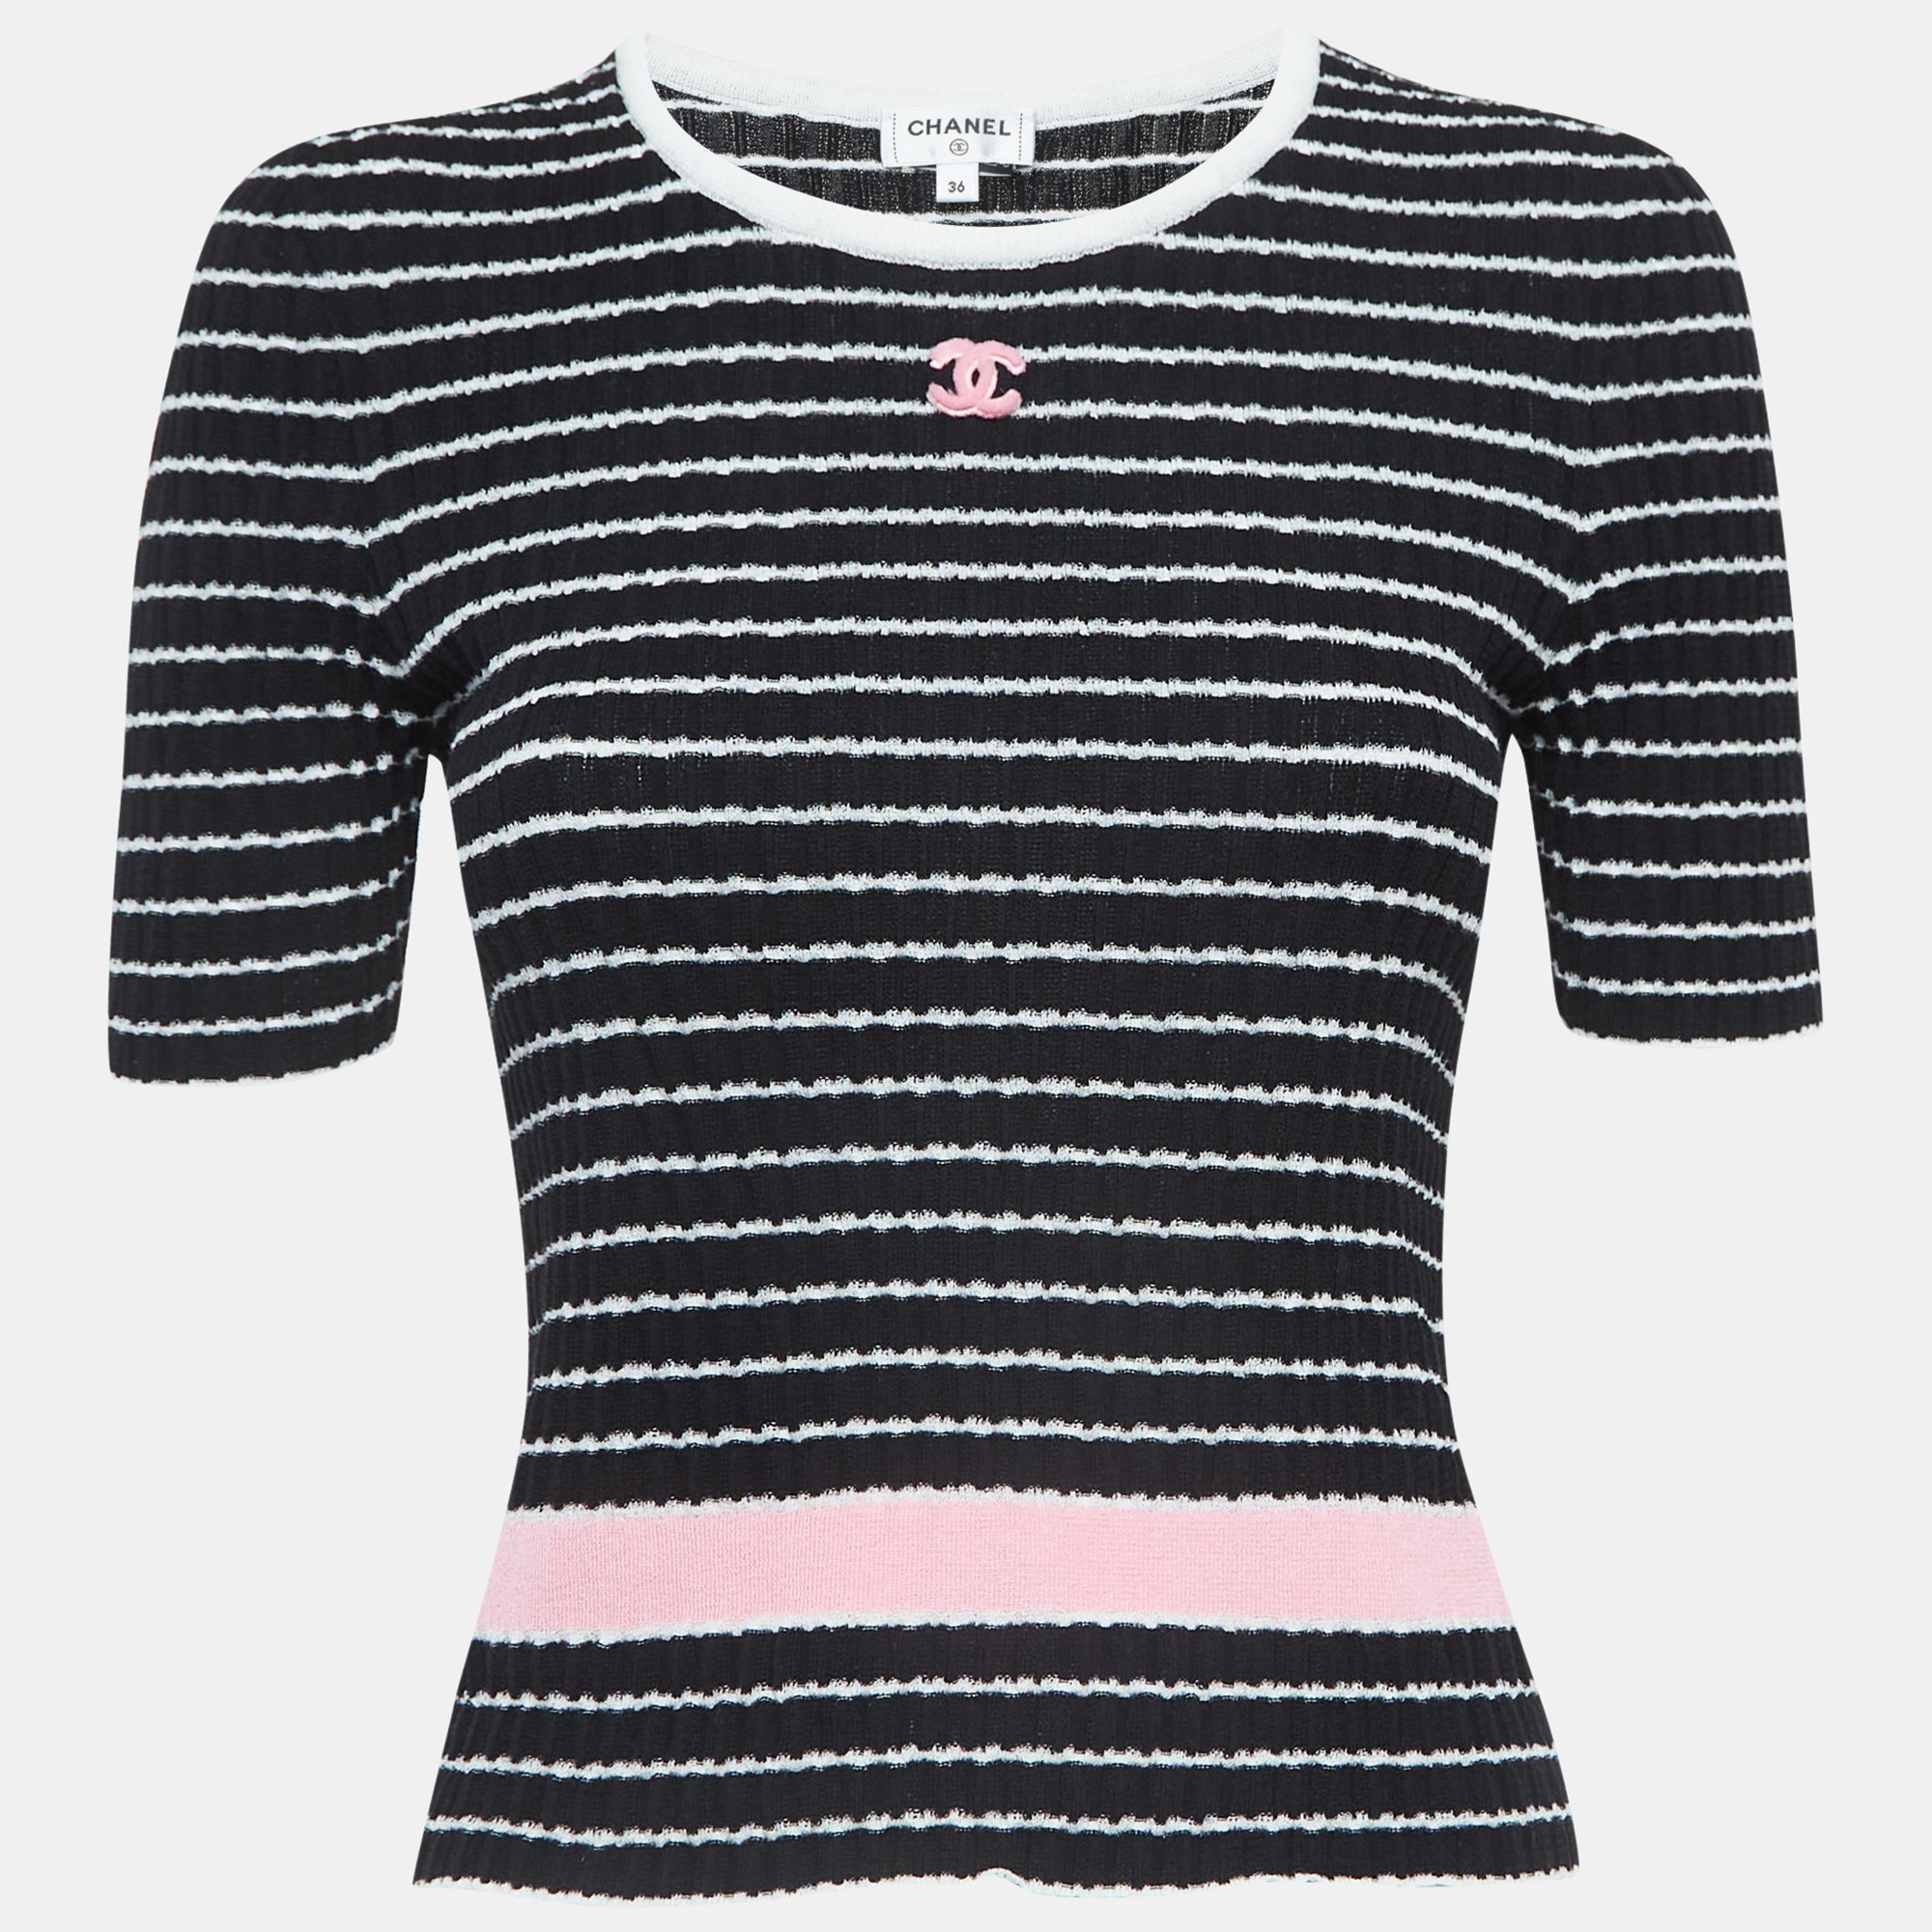 Chanel black striped knit logo t-shirt s